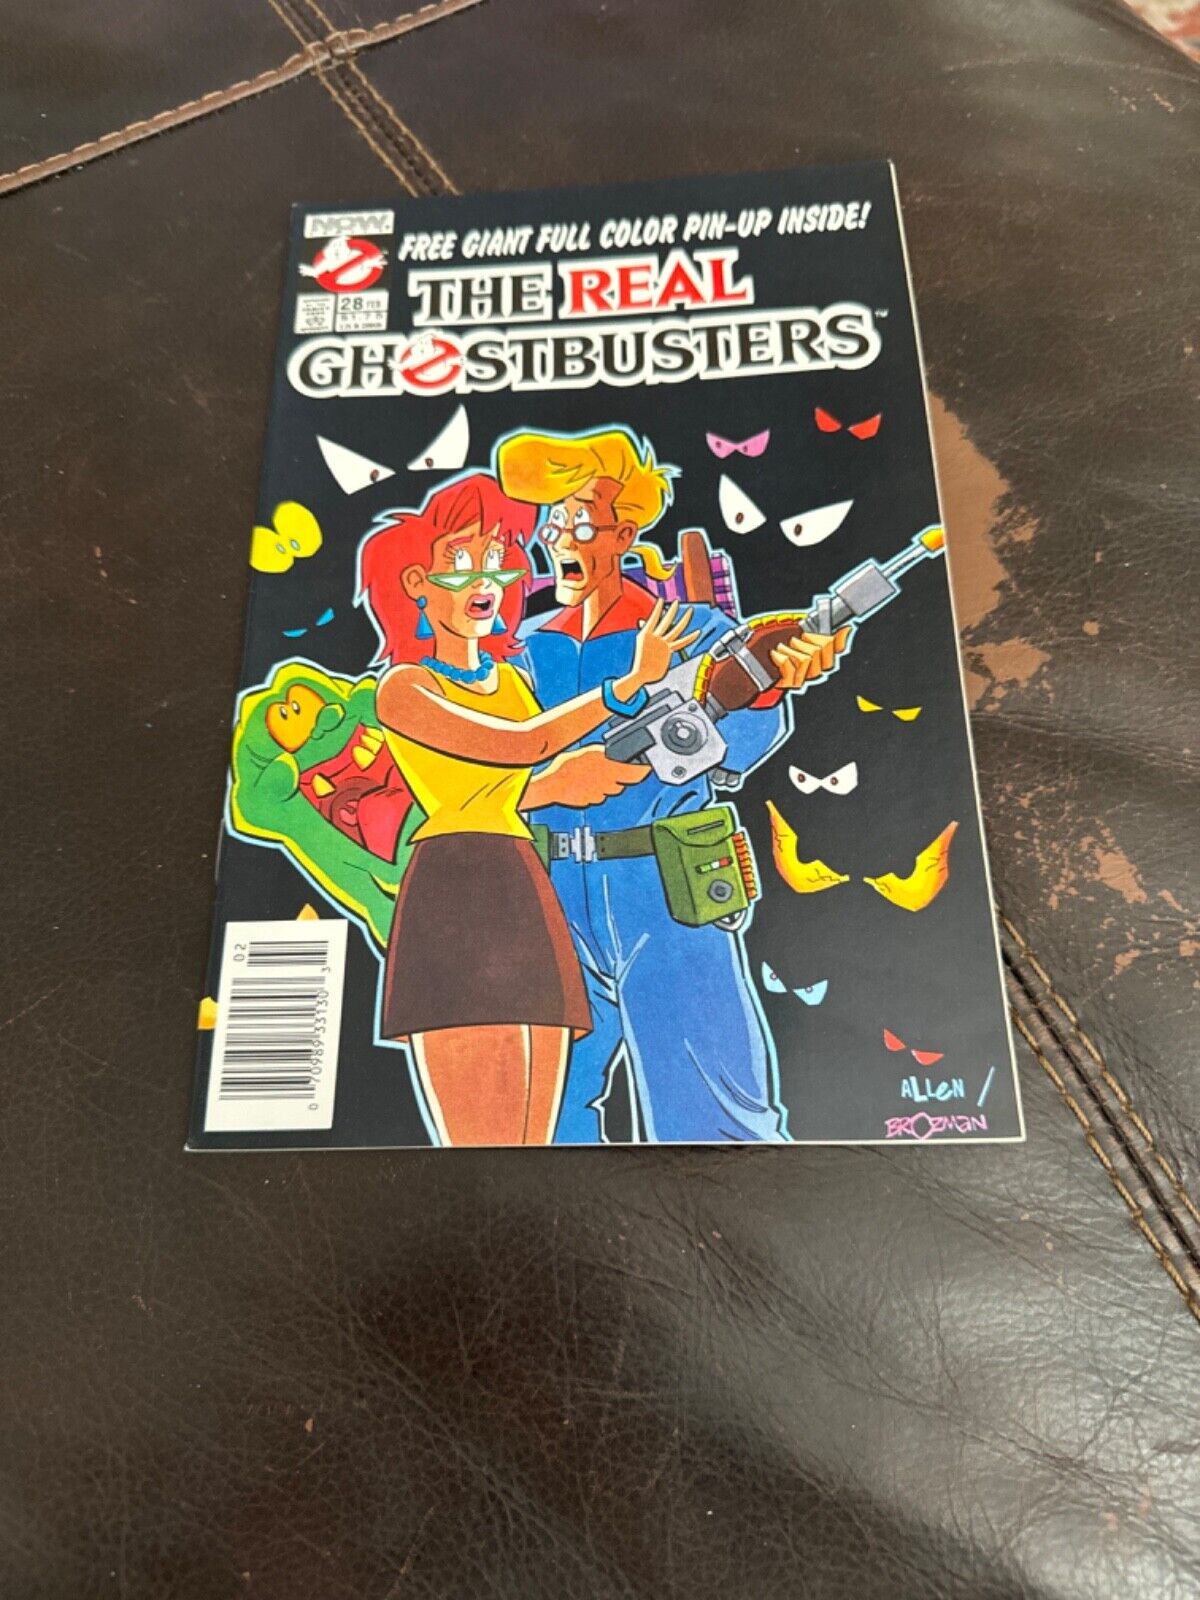 GHOSTBUSTERS #28 (1988) - 9.4 NEAR MINT (NOW)